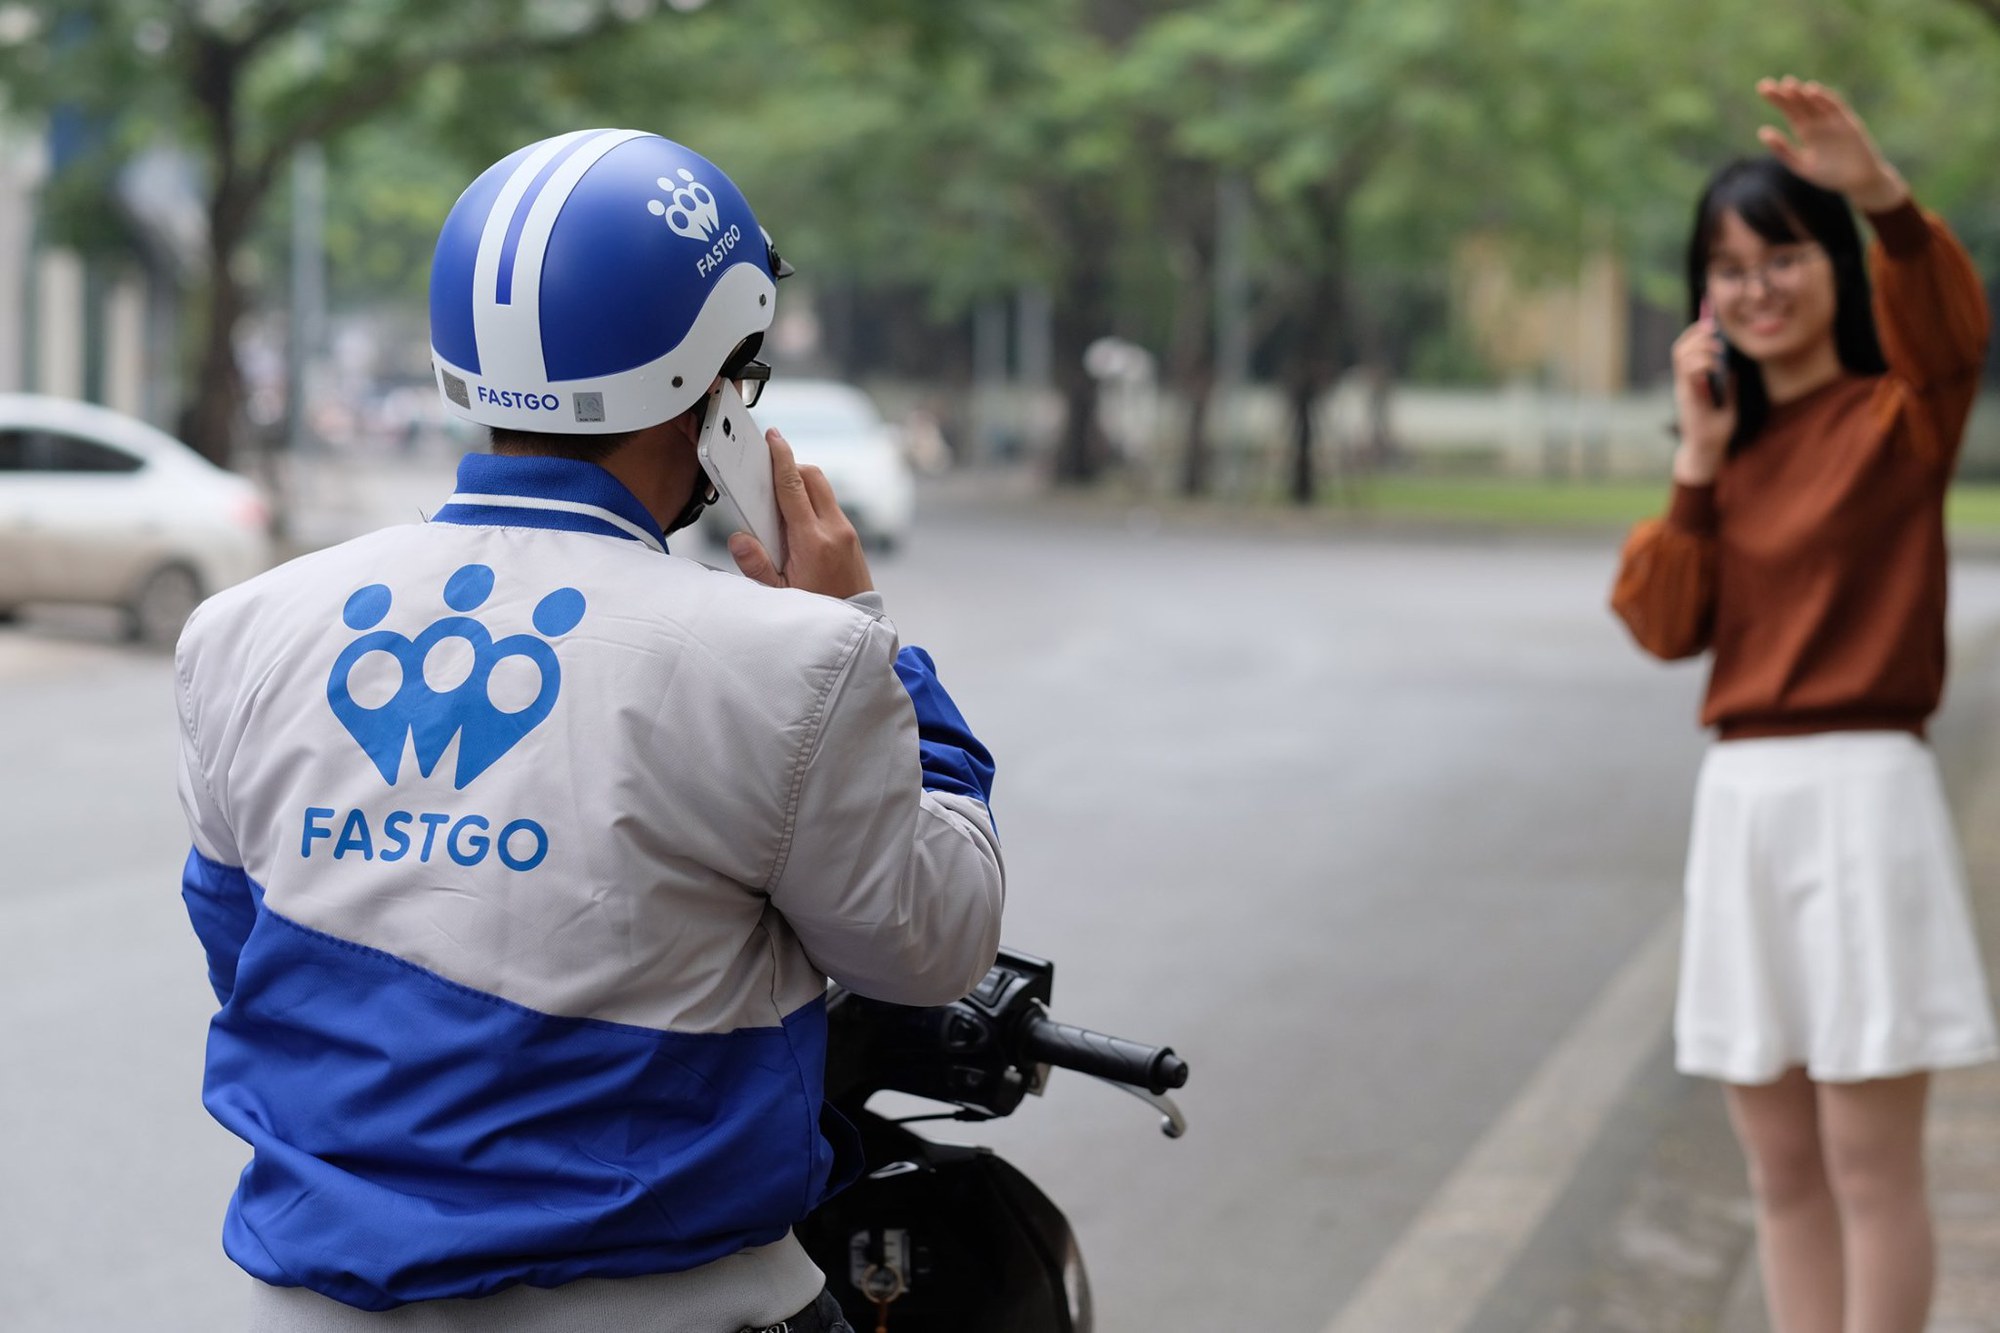 Hỏi chuyện CEO FastGo: Vì đâu giấc mộng Top 3 ứng dụng gọi xe Đông Nam Á tan vỡ? - Ảnh 4.